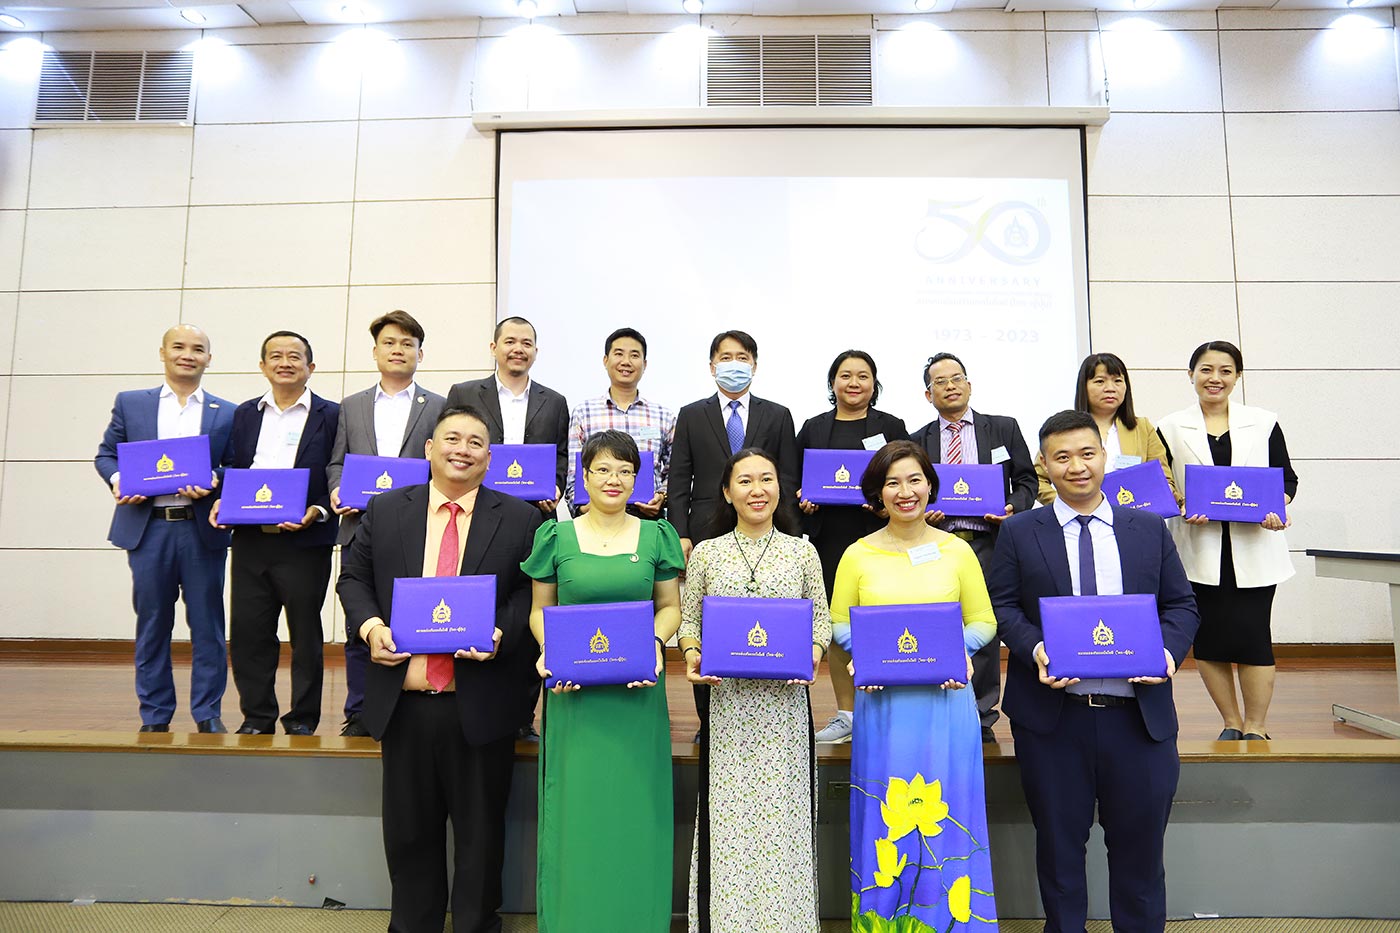 งานสัมมนา SME Promotion and Industrial Development Project เพื่อพัฒนาศักยภาพผู้ประกอบการ SME จากเวียดนาม